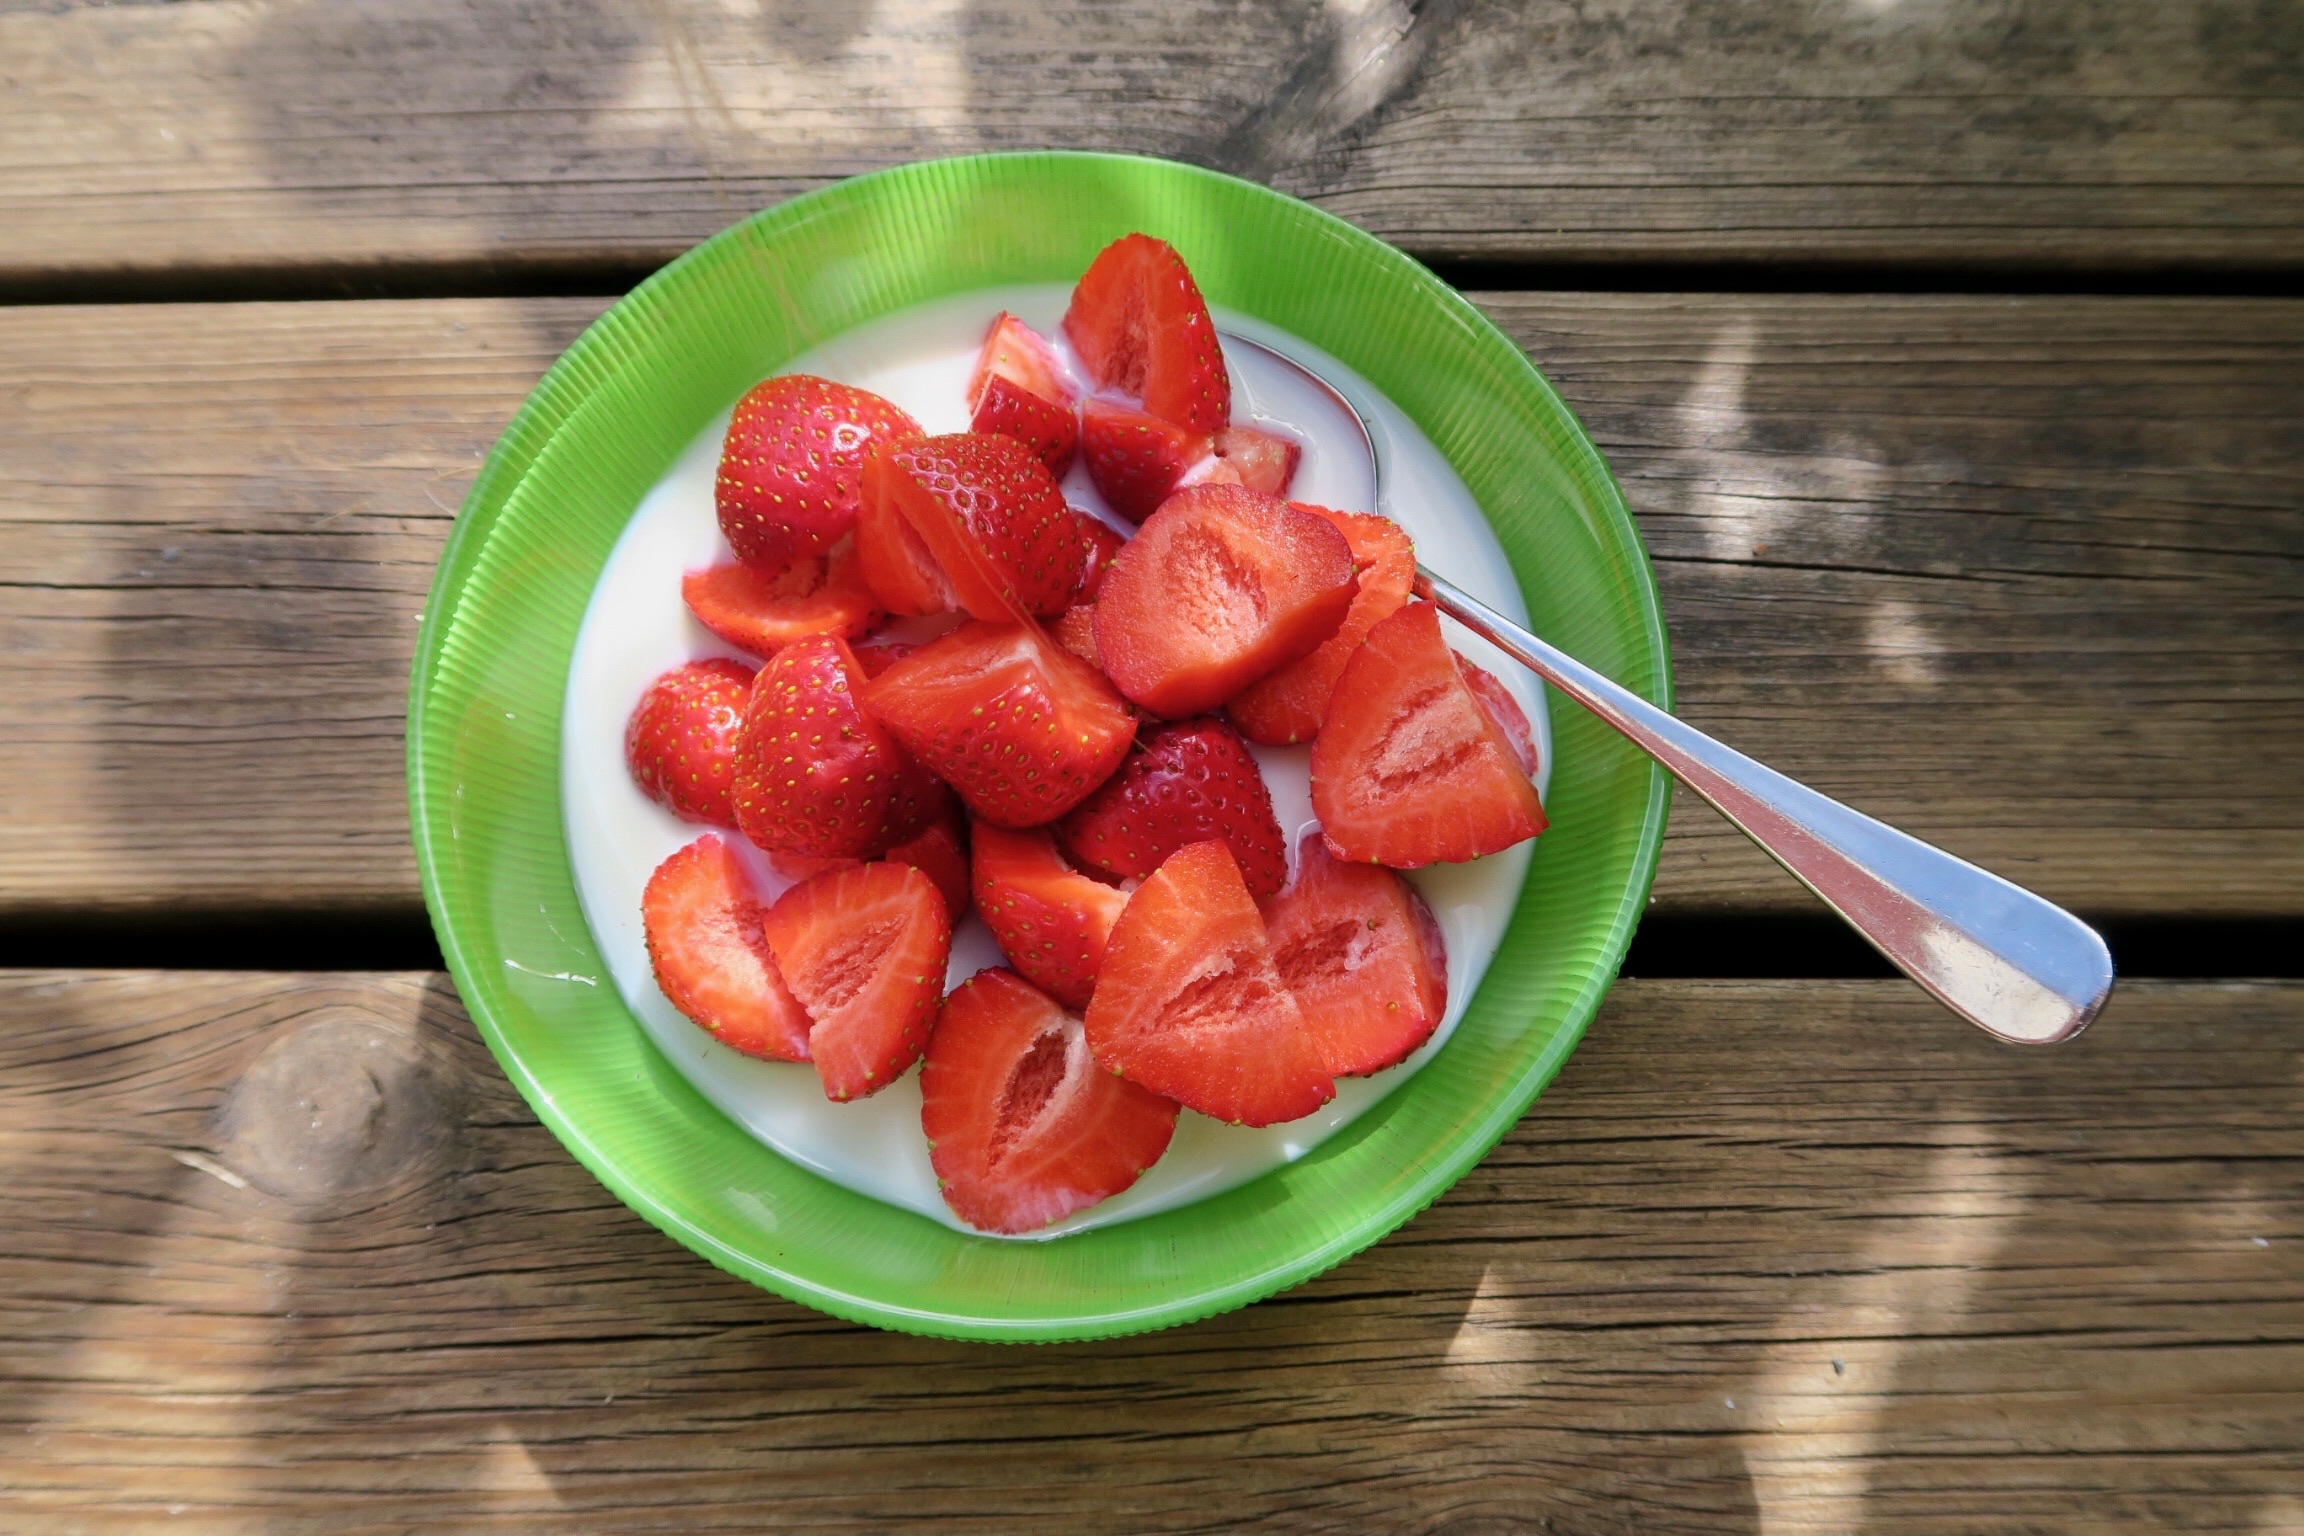 Finns det något godare än jordgubbar med gräddmjölk? nej. 